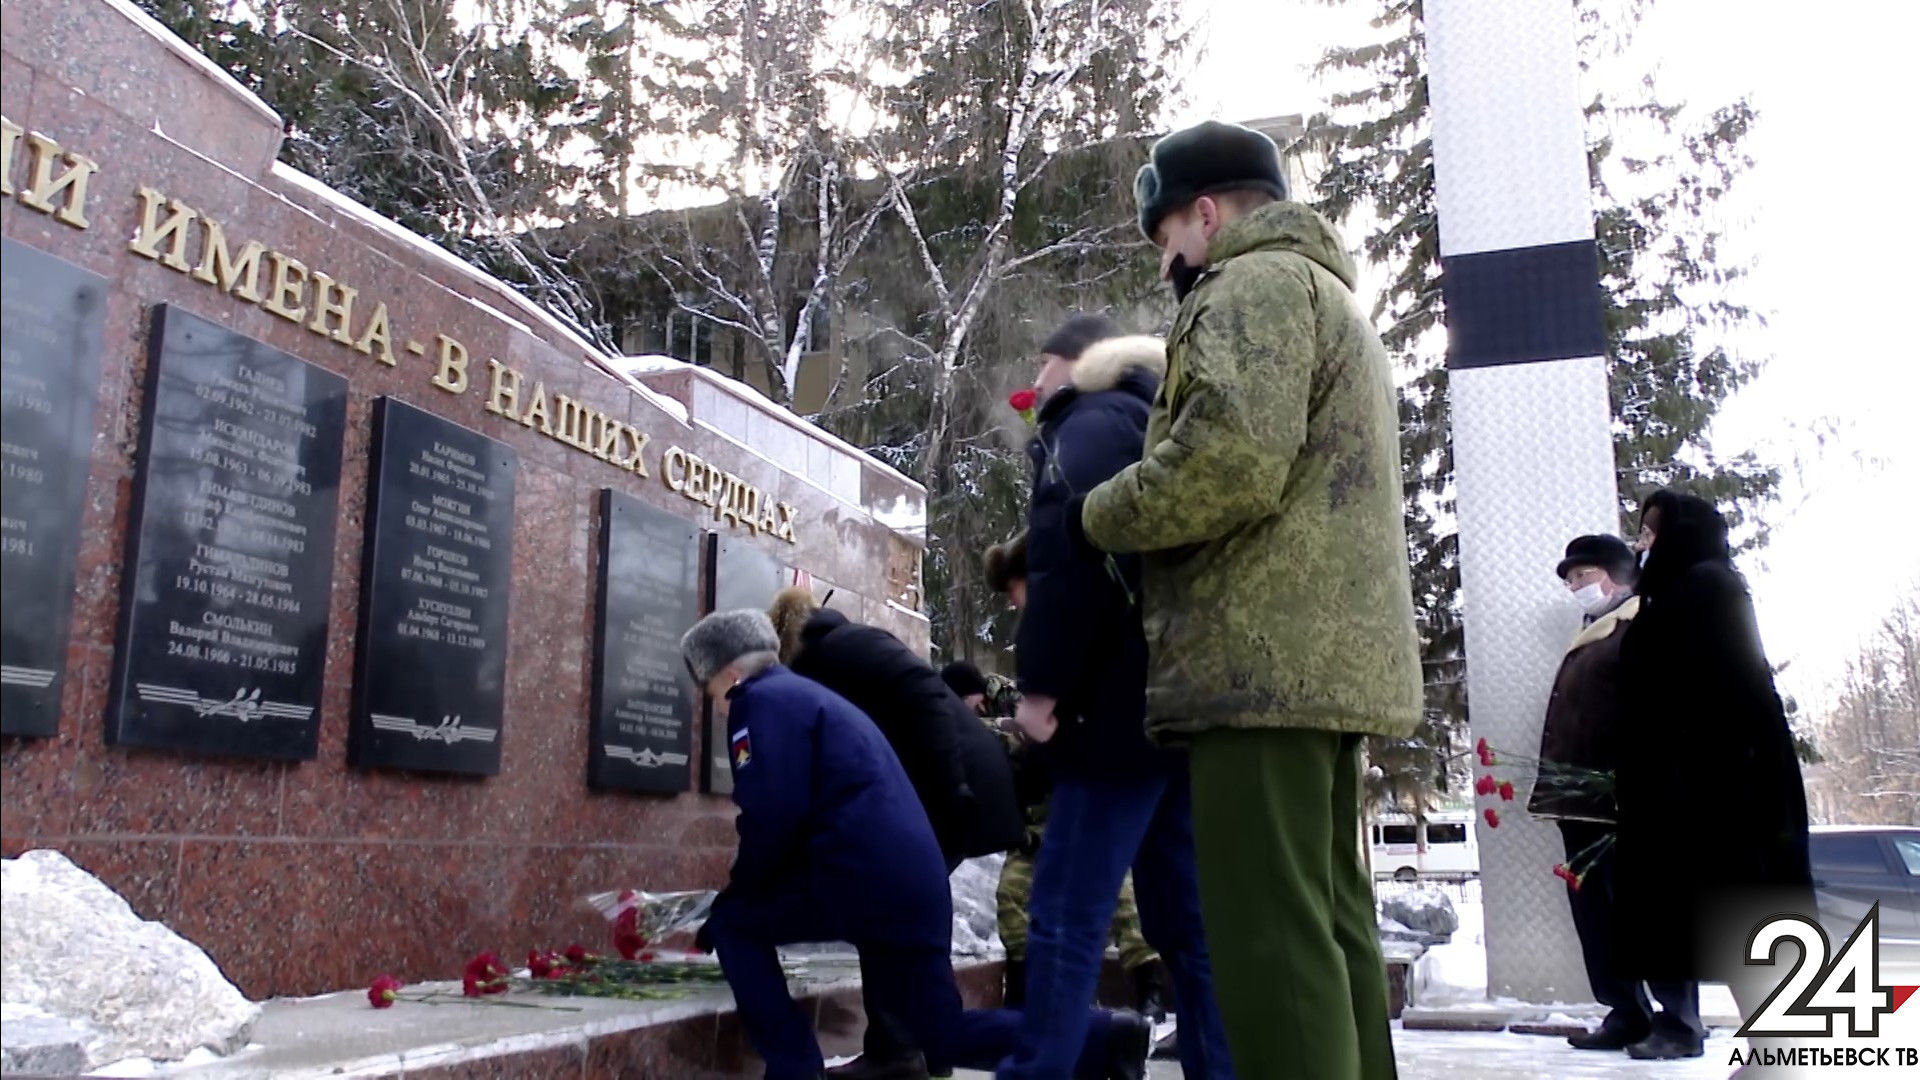 32-ю годовщину со дня вывода войск из Афганистана отметили в Альметьевске